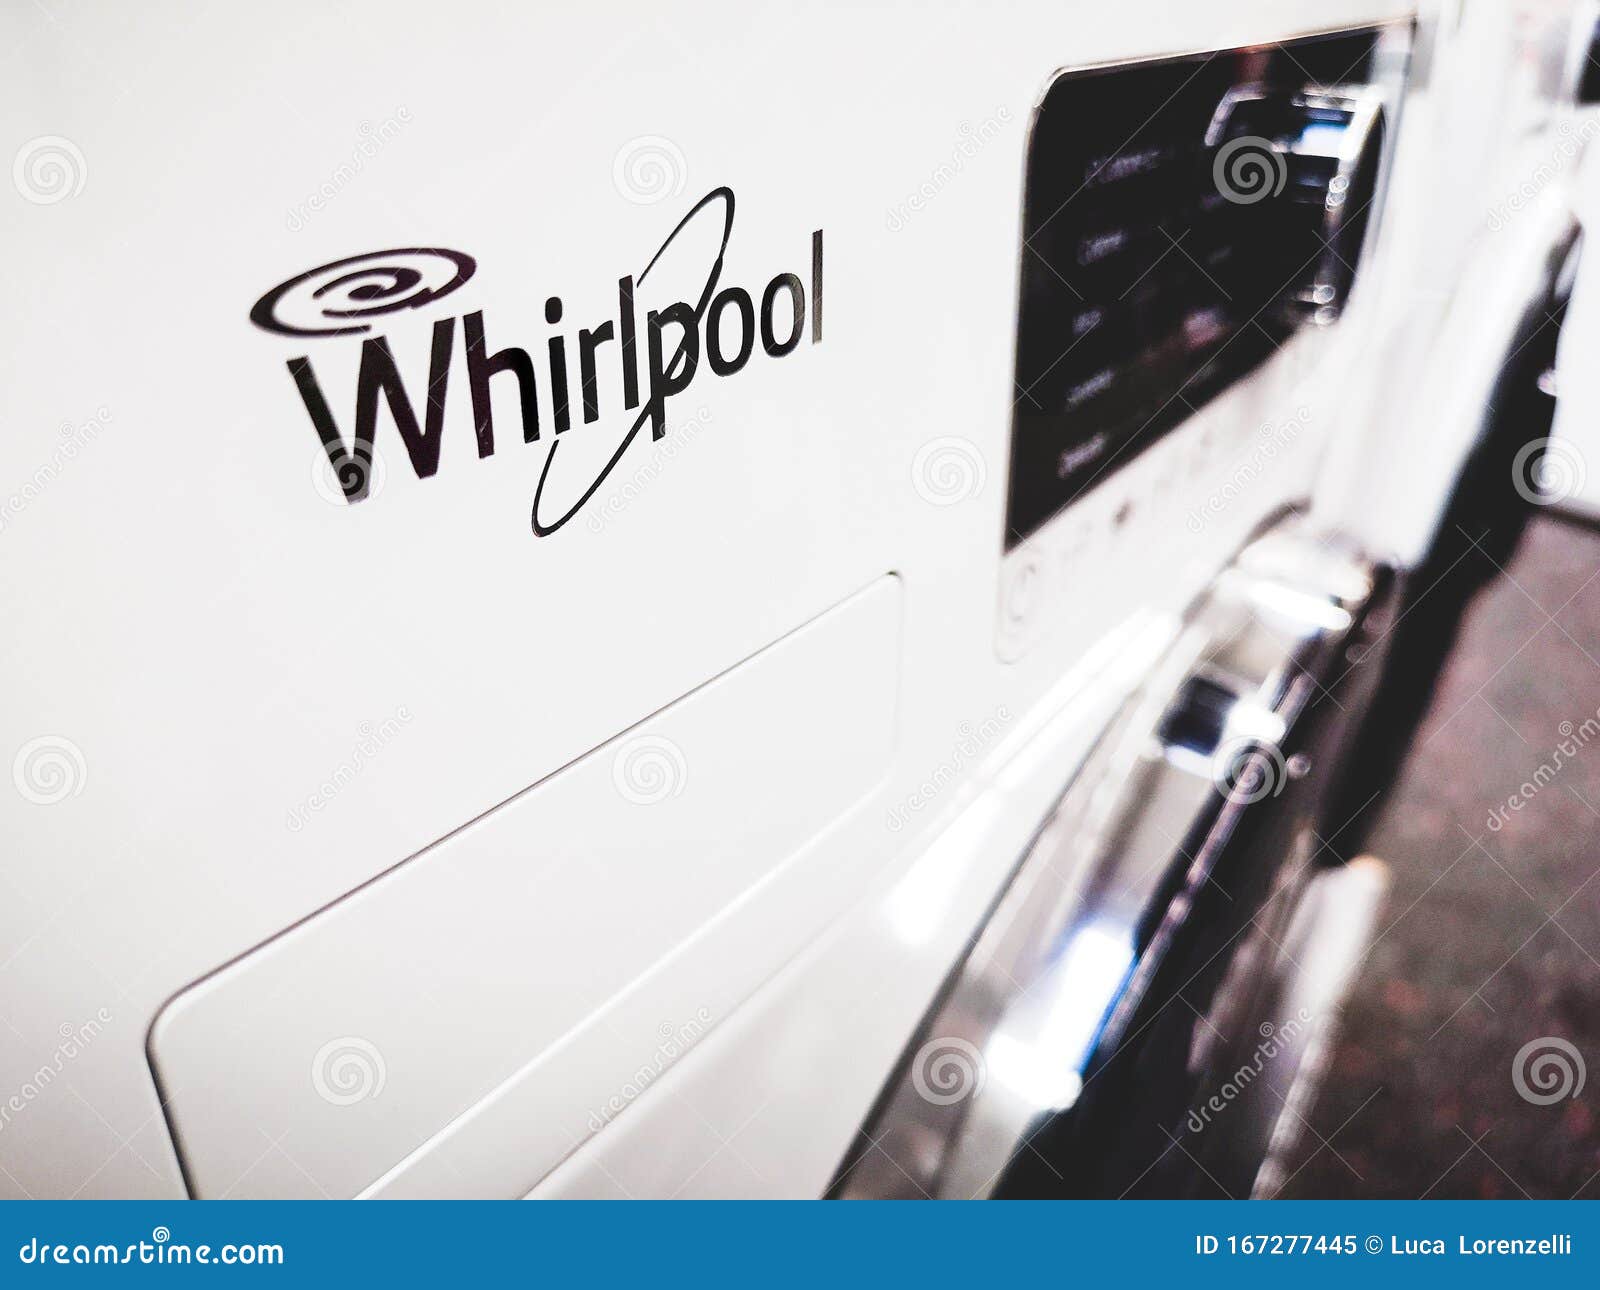 vervorming springen wetenschappelijk Sluit Een Logo Van Het Merk Whirlpool Op Een Witte Wasmachine Redactionele  Afbeelding - Image of machine, gril: 167277445